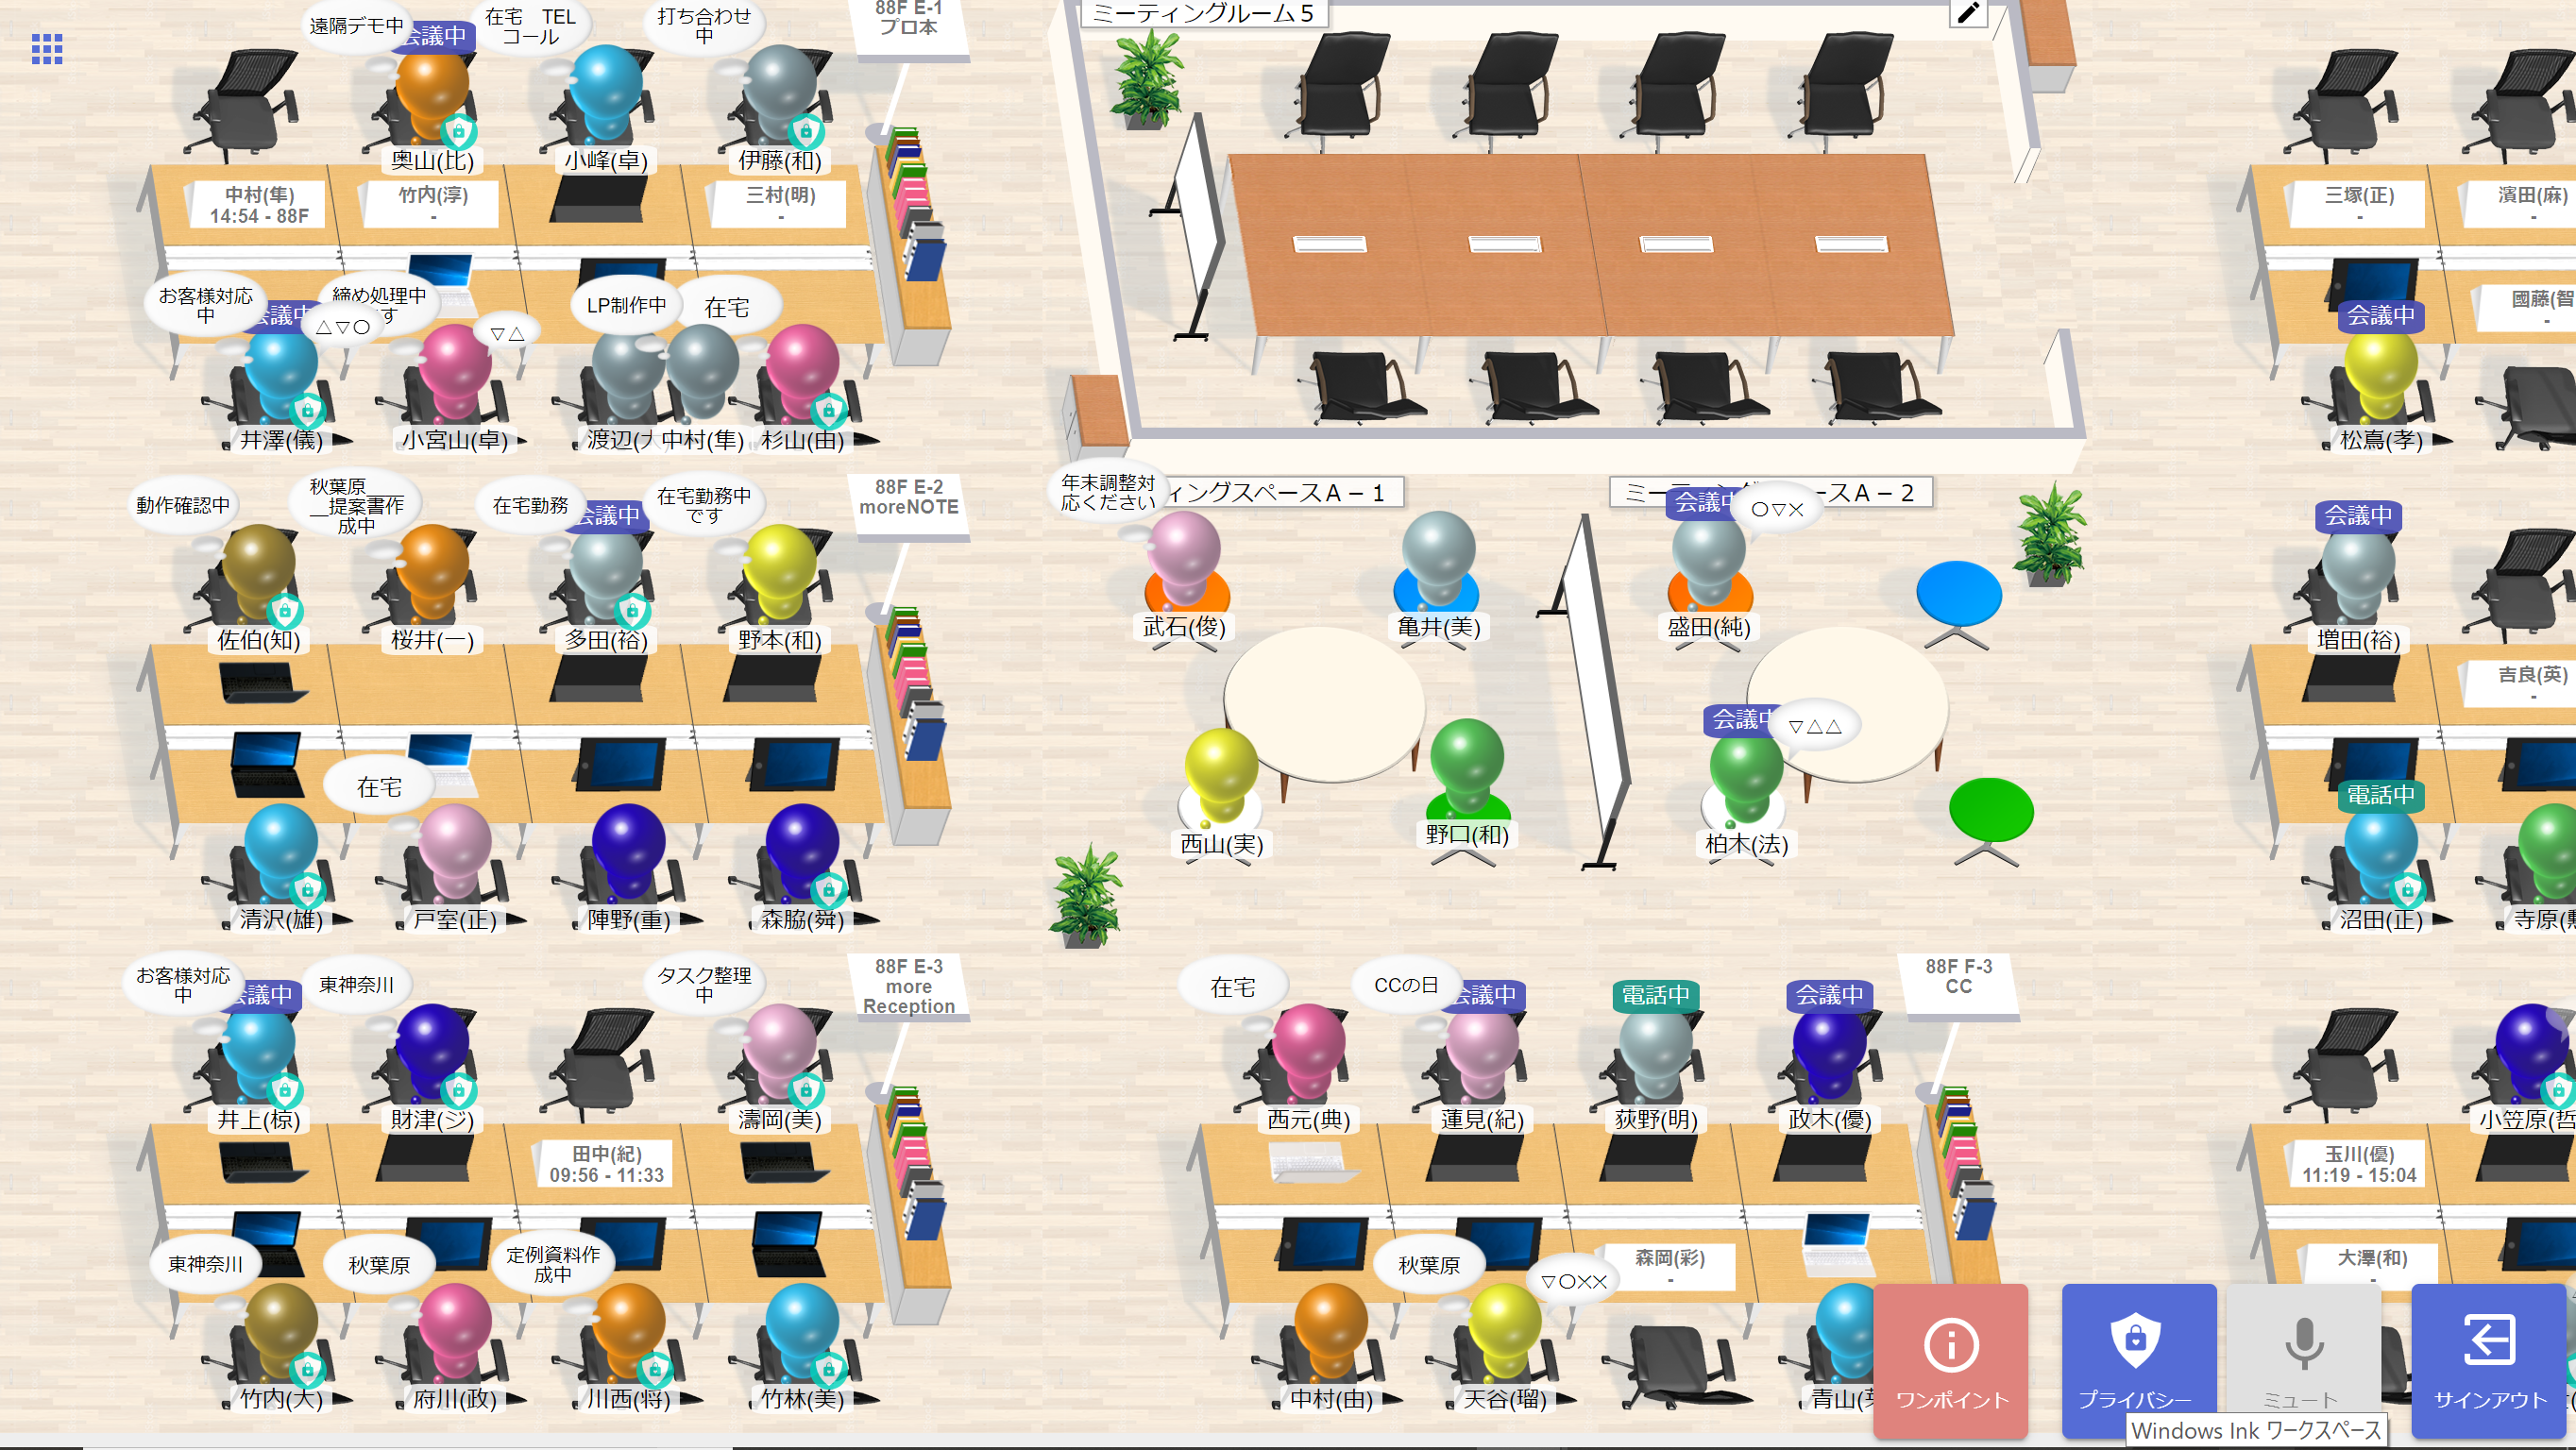 森山和道の ヒトと機械の境界面 仮想オフィスにアバター出勤で社内コミュニケーション問題は解決 富士ソフト Fam Office の取り組み Pc Watch